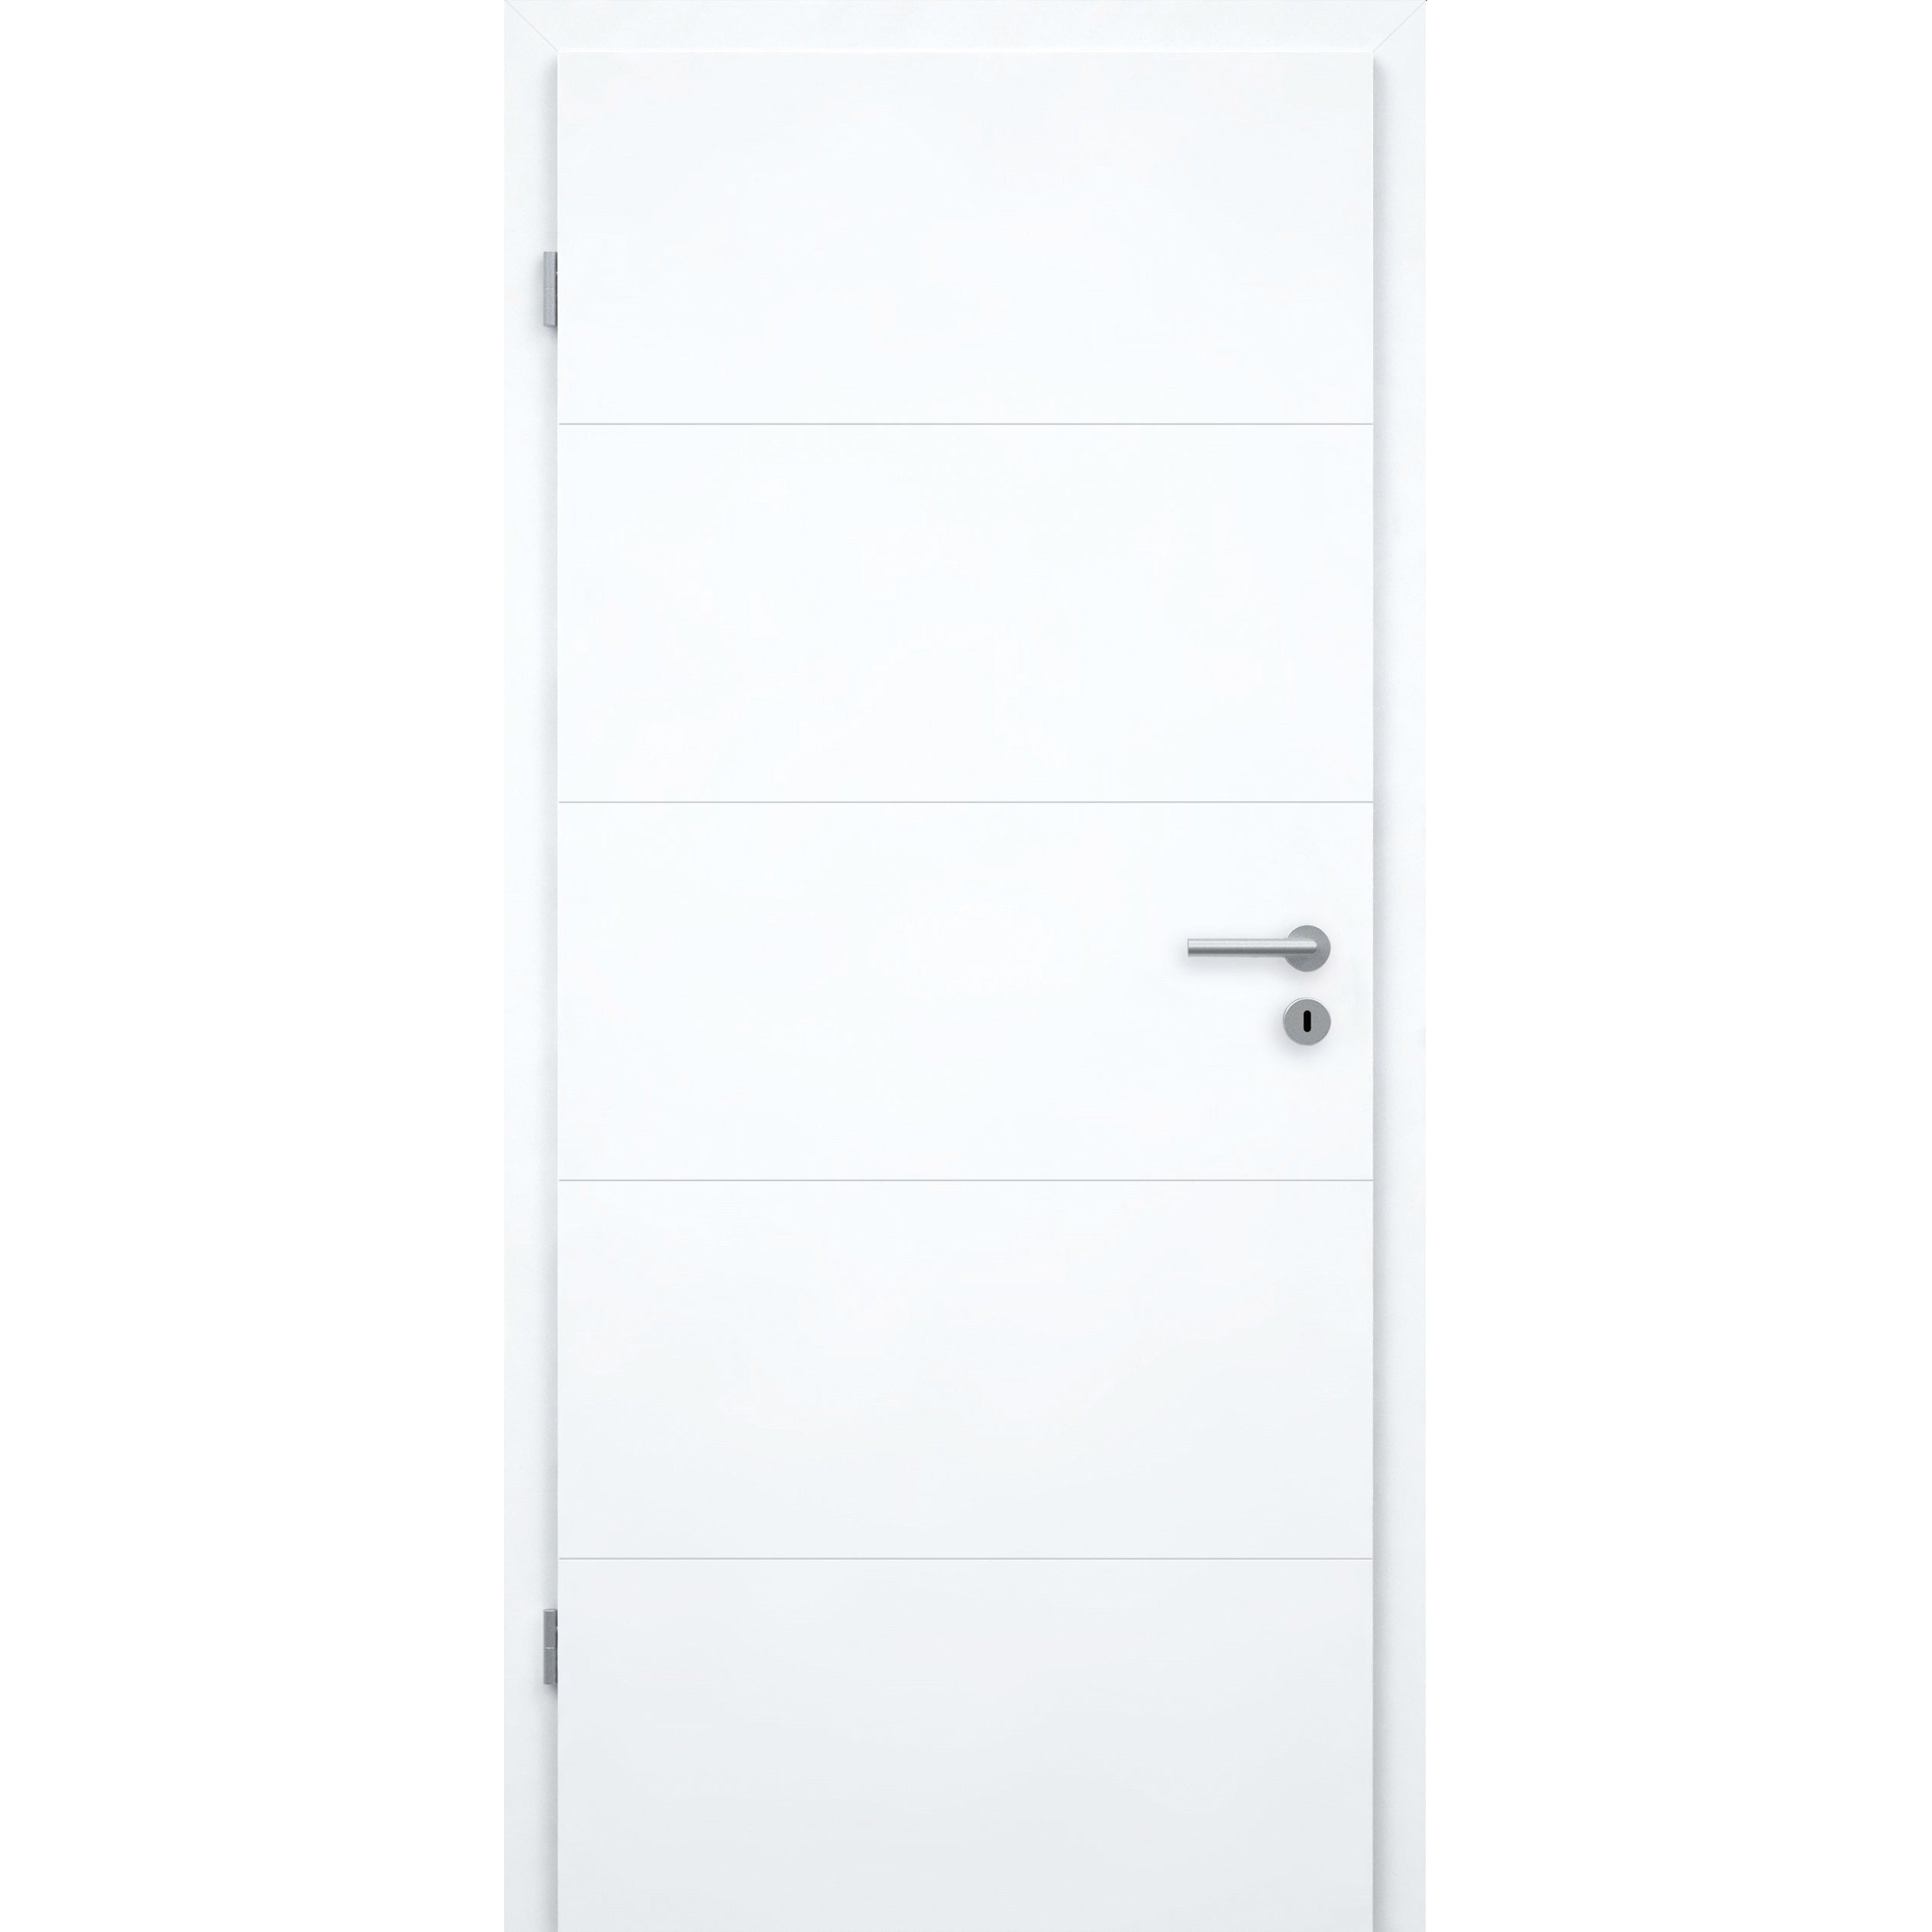 Wohnungseingangstür brillant-weiß 4 Rillen Designkante SK1 / KK3 - Modell Designtür Q43